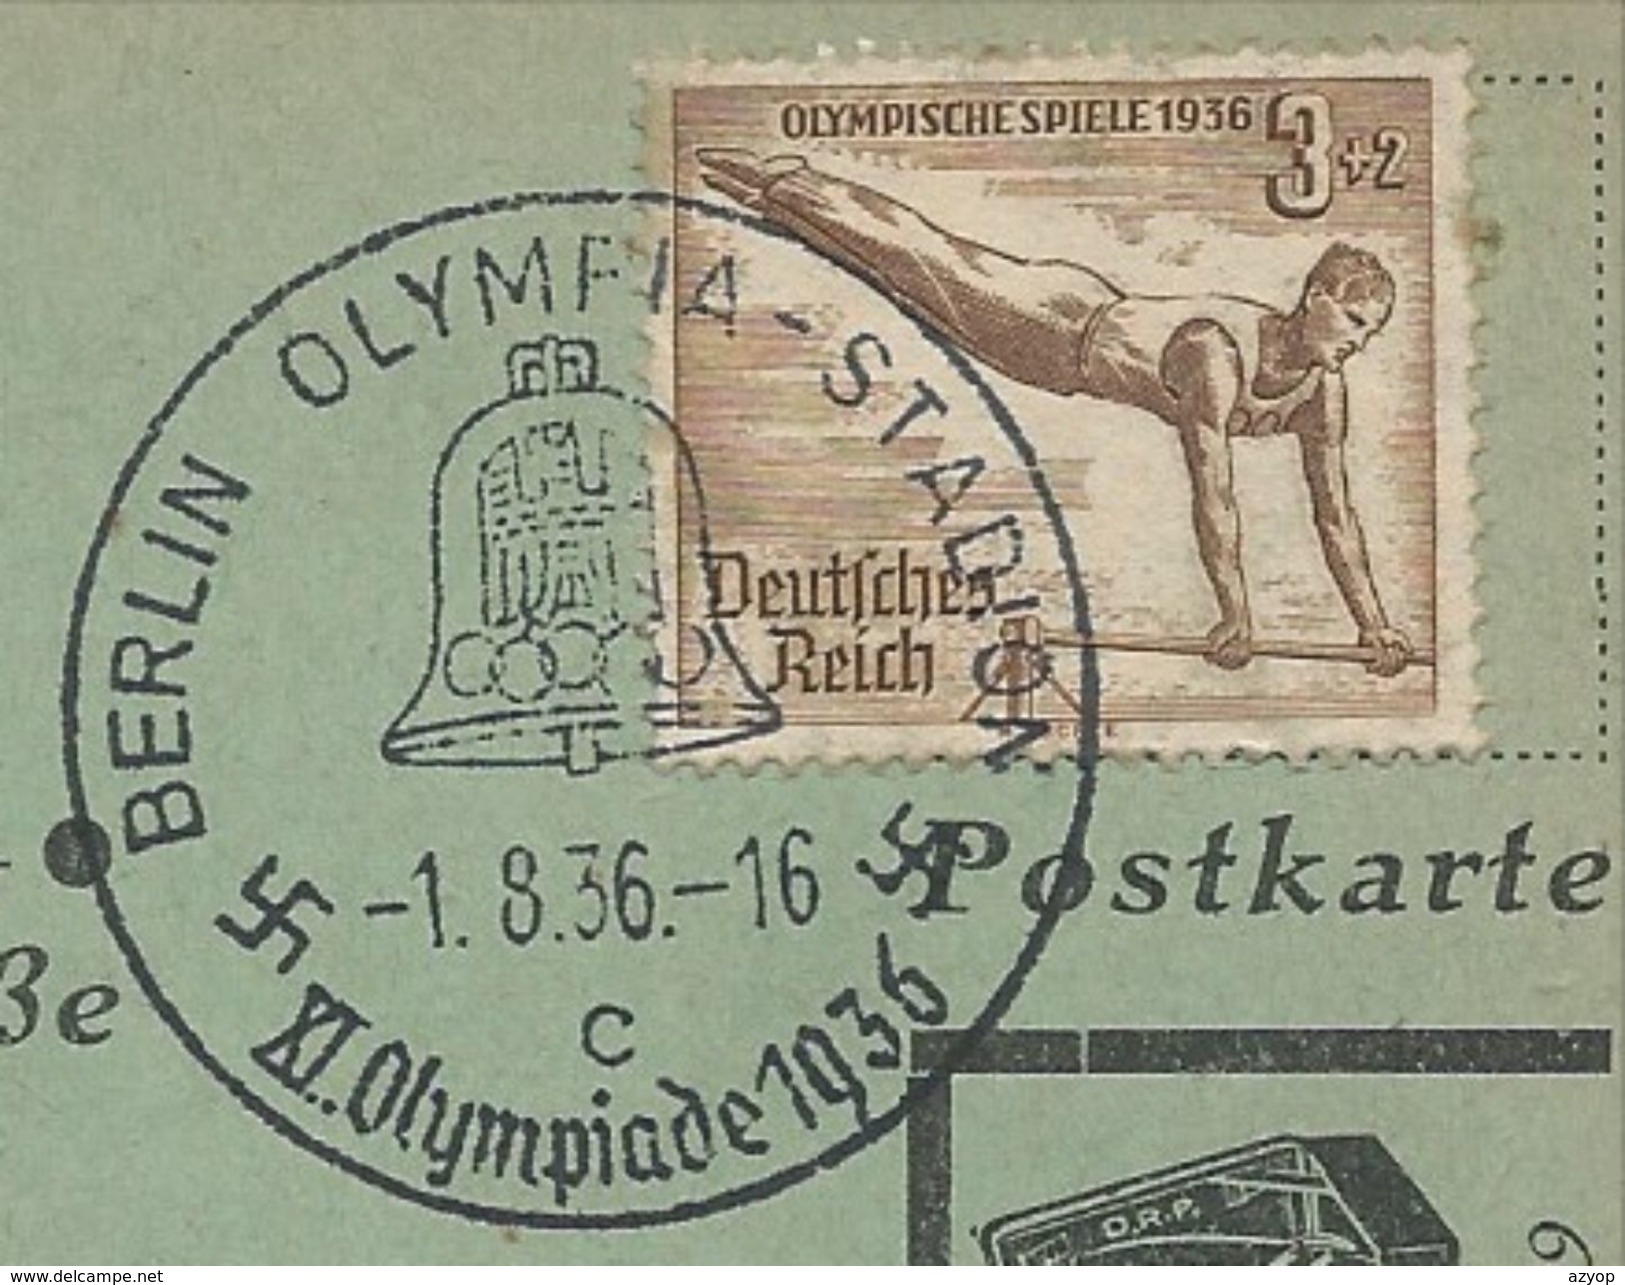 Musik Heimat Grüsse - Heimat Und Vaterland - Briefmarken Und Stempel Sehen - Olympia - Olympiade 1936 - 3 Scans - Guerra 1939-45